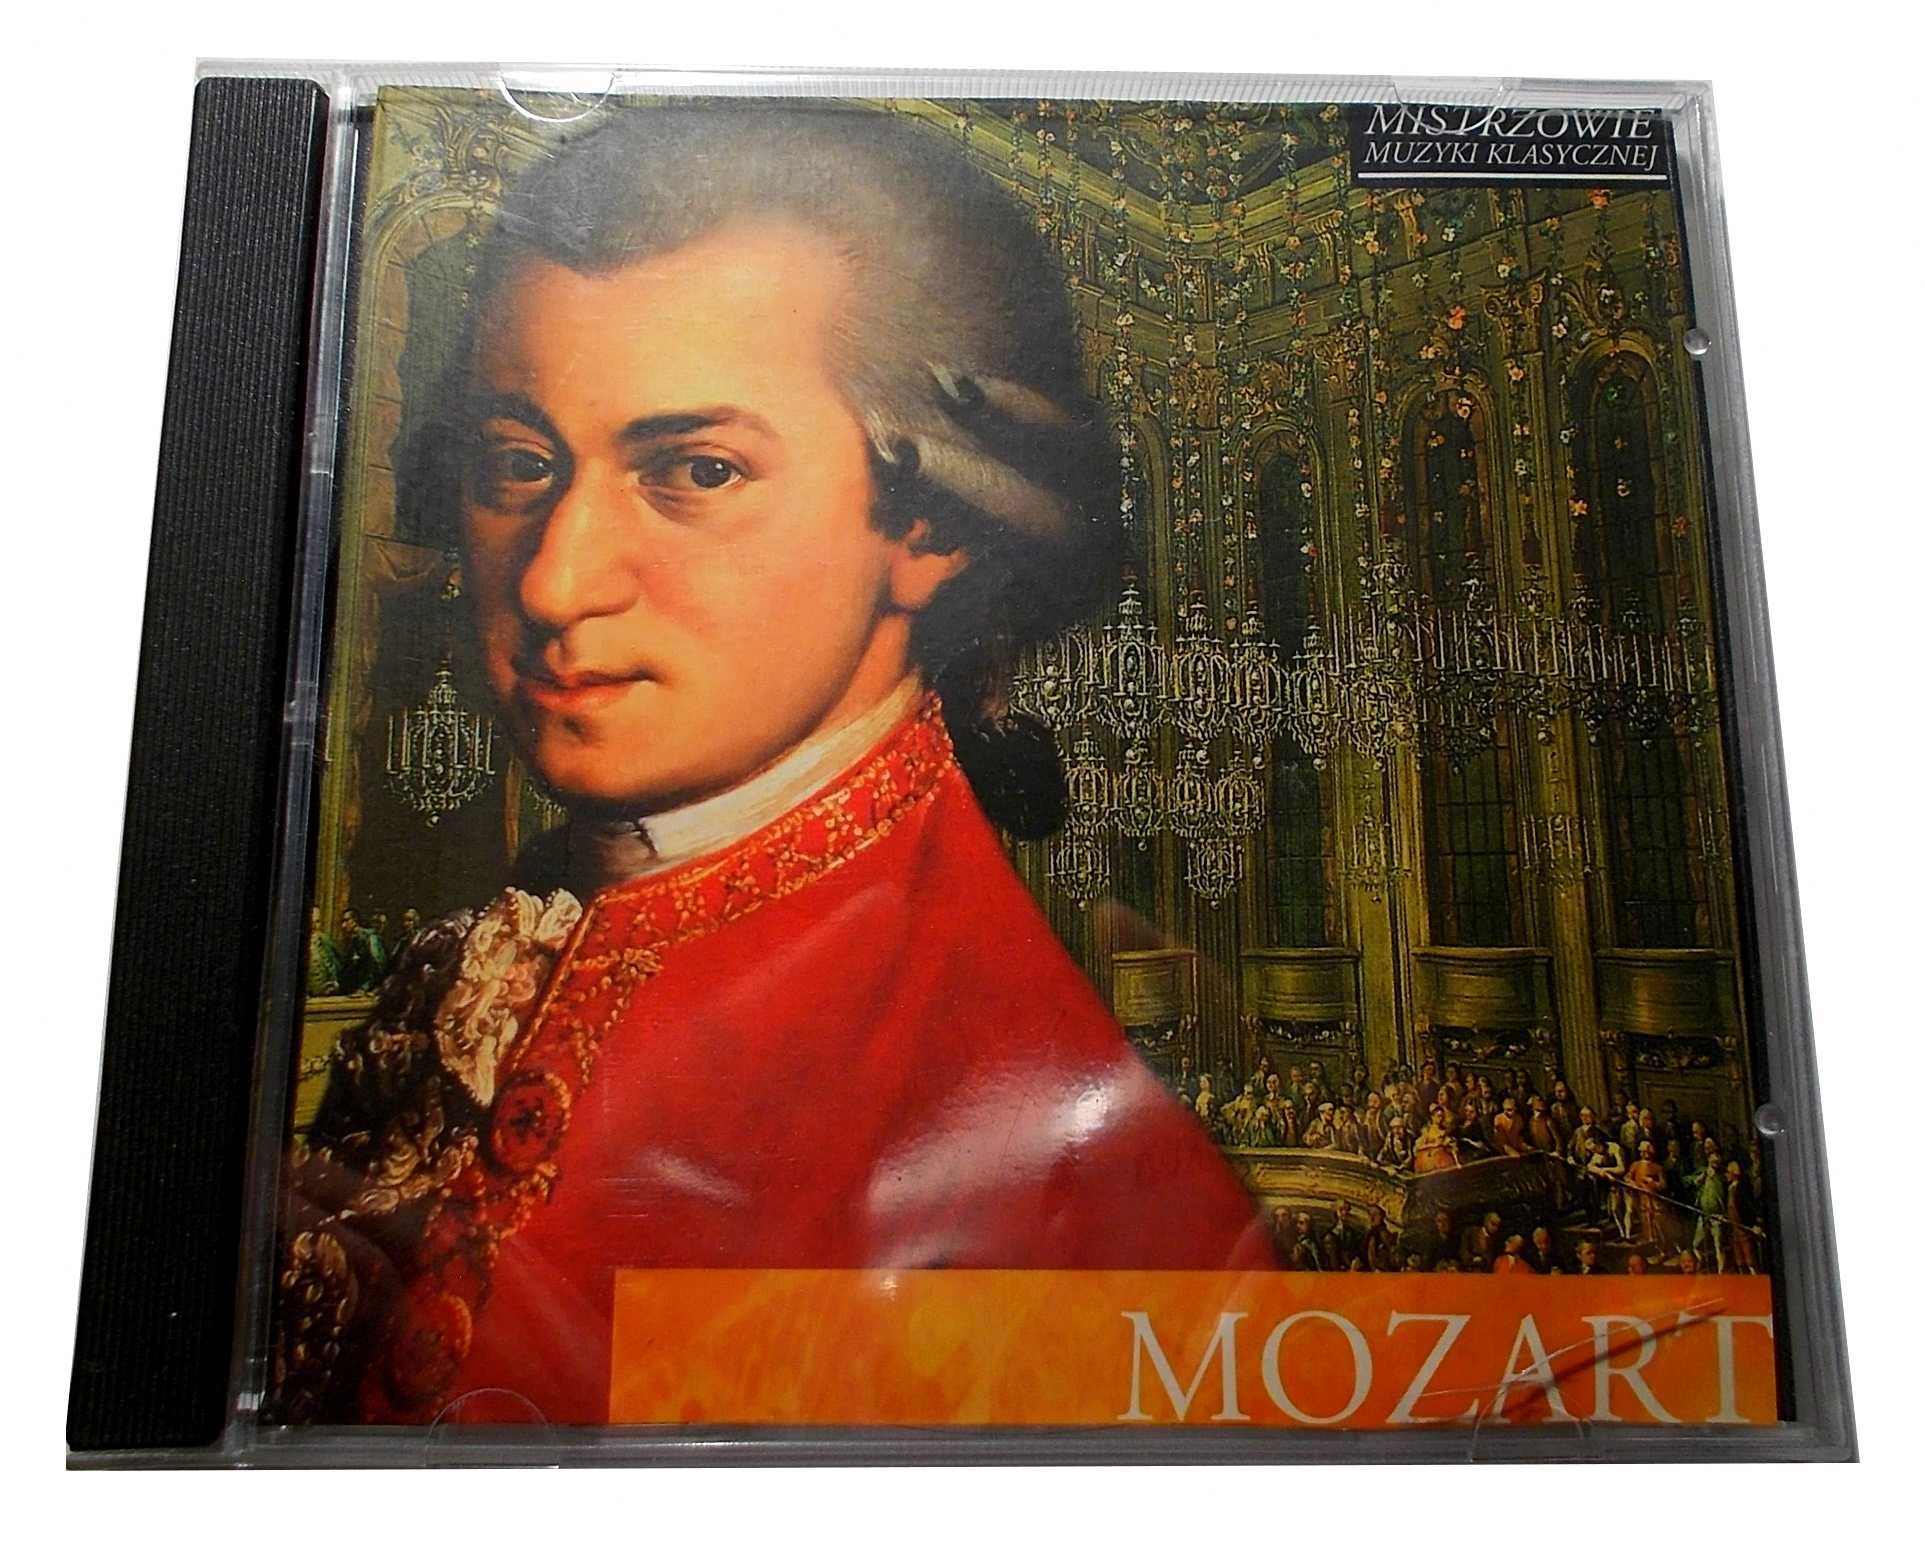 Płyta CD - Mozart - Mistrzowie muzyki klasycznej - (2009r.)